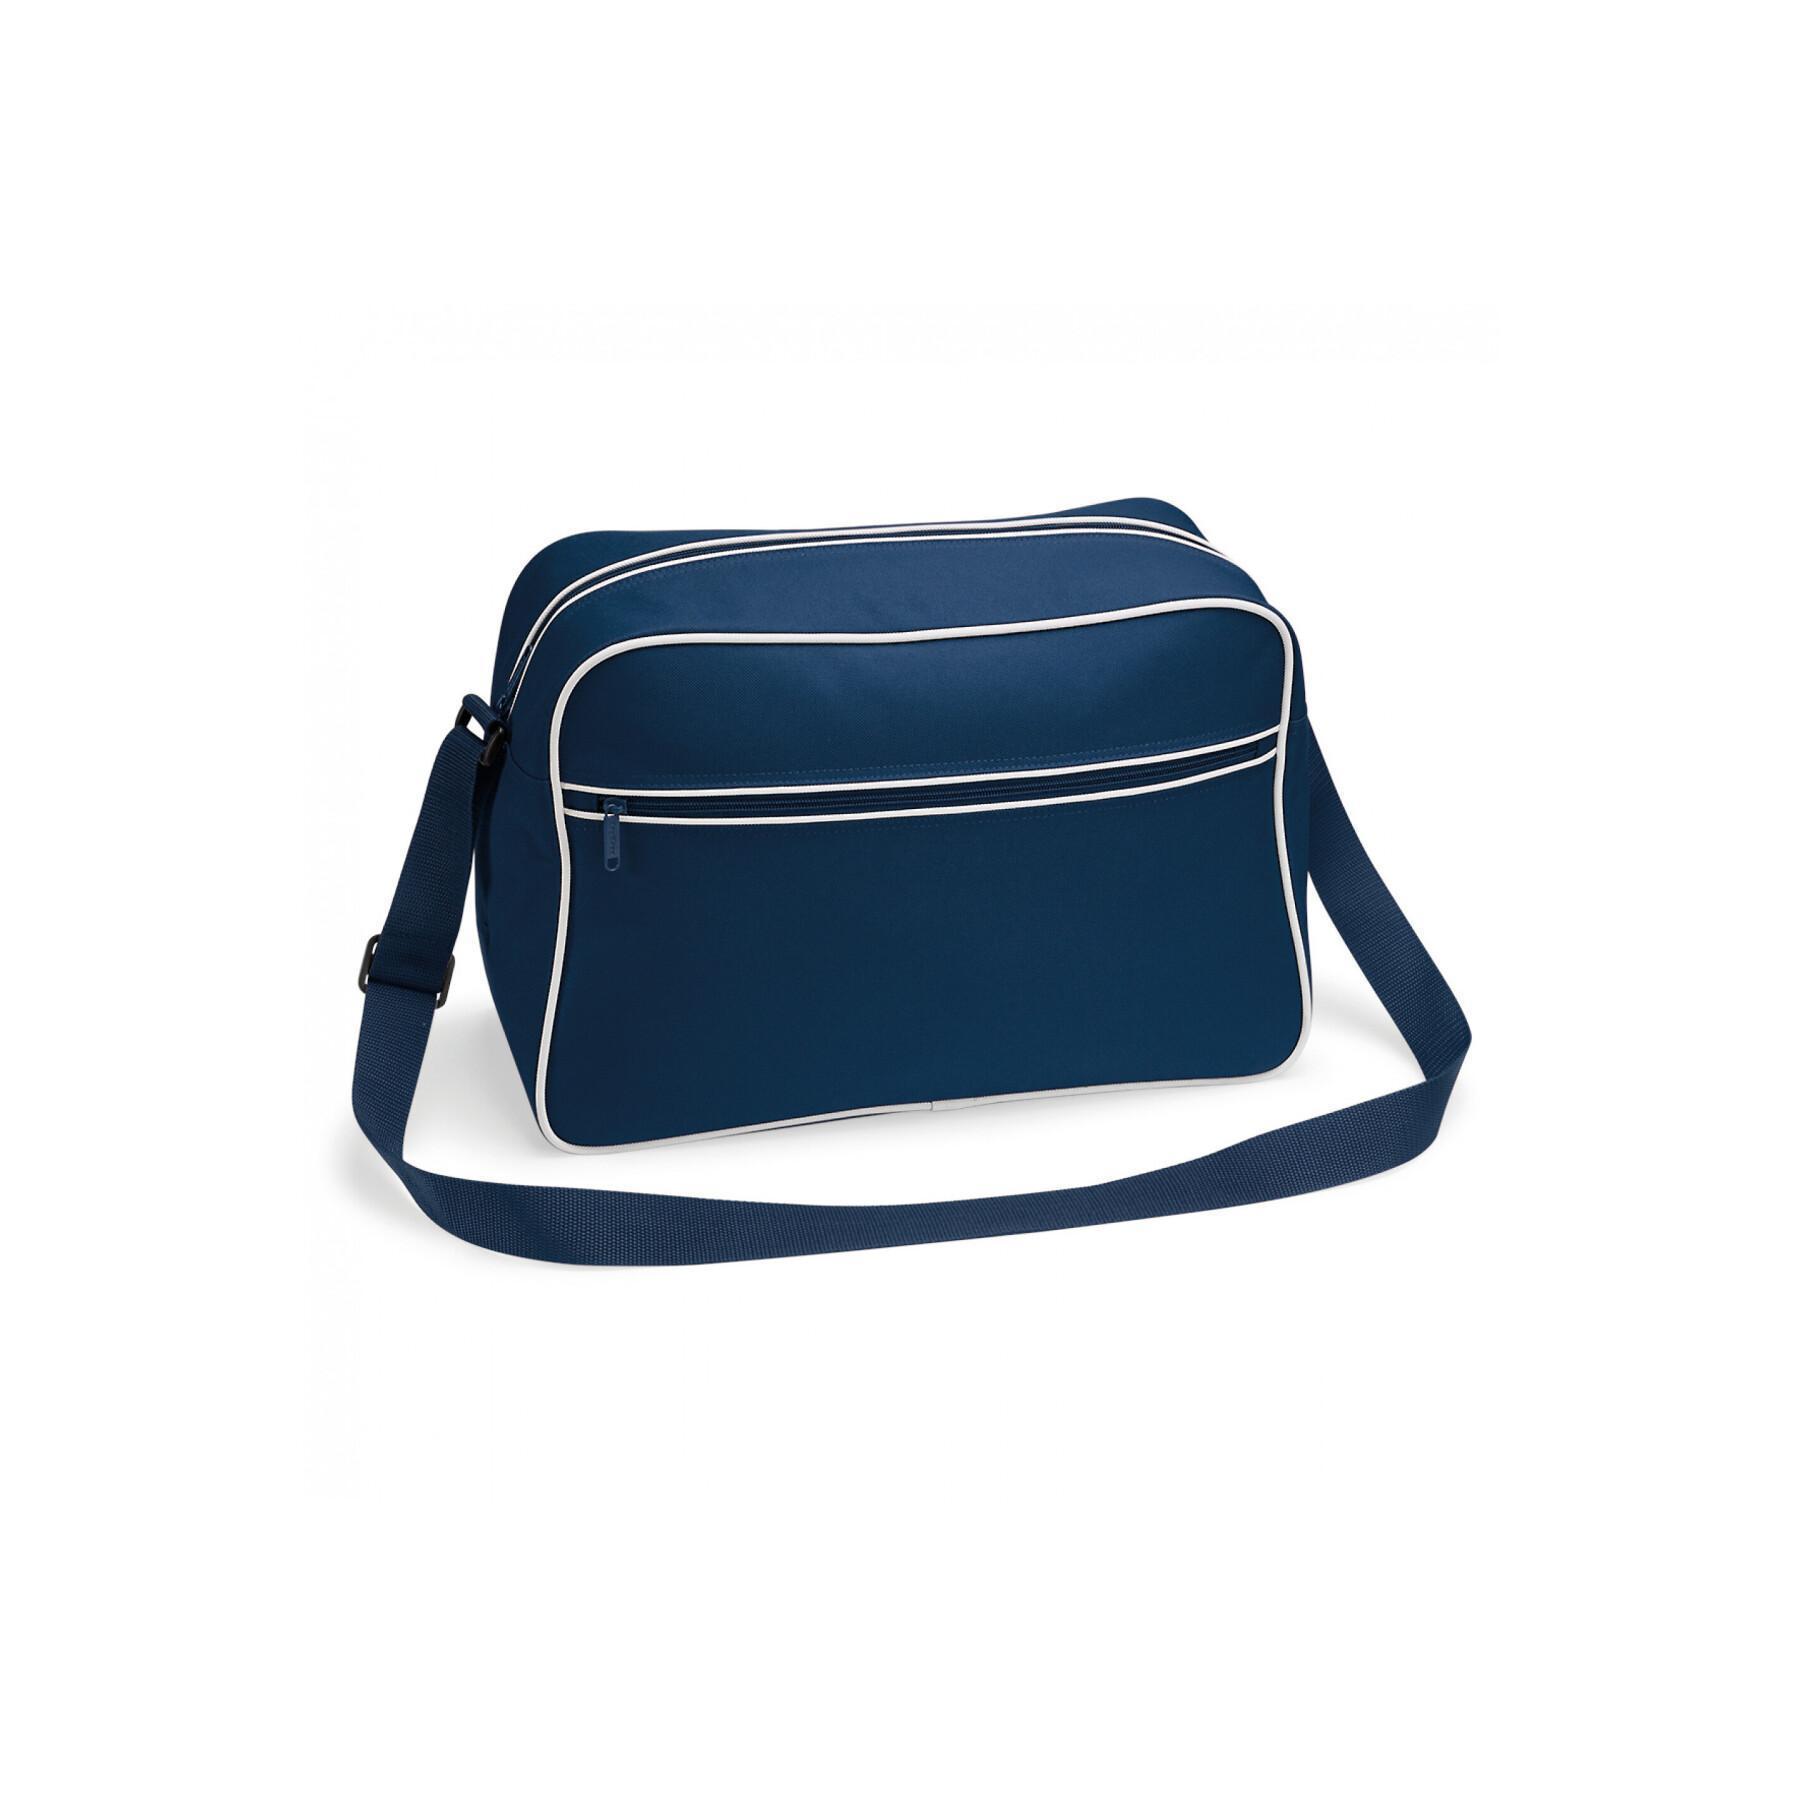 Women's shoulder bag Bag Base Rétro